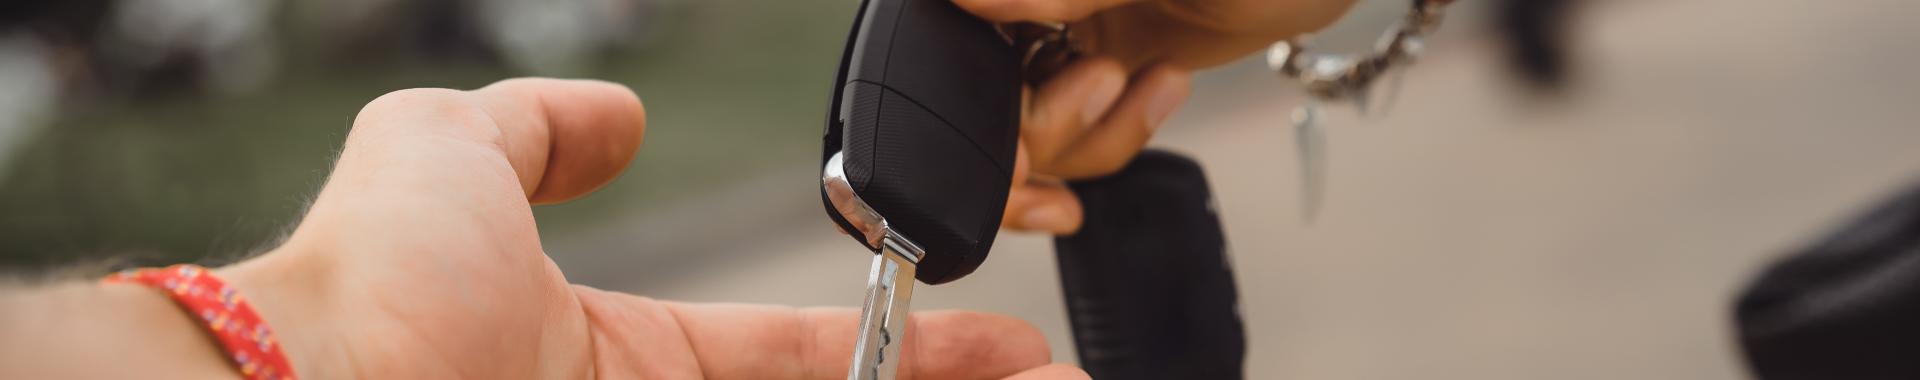 Comment changer la coque d'une clé de voiture